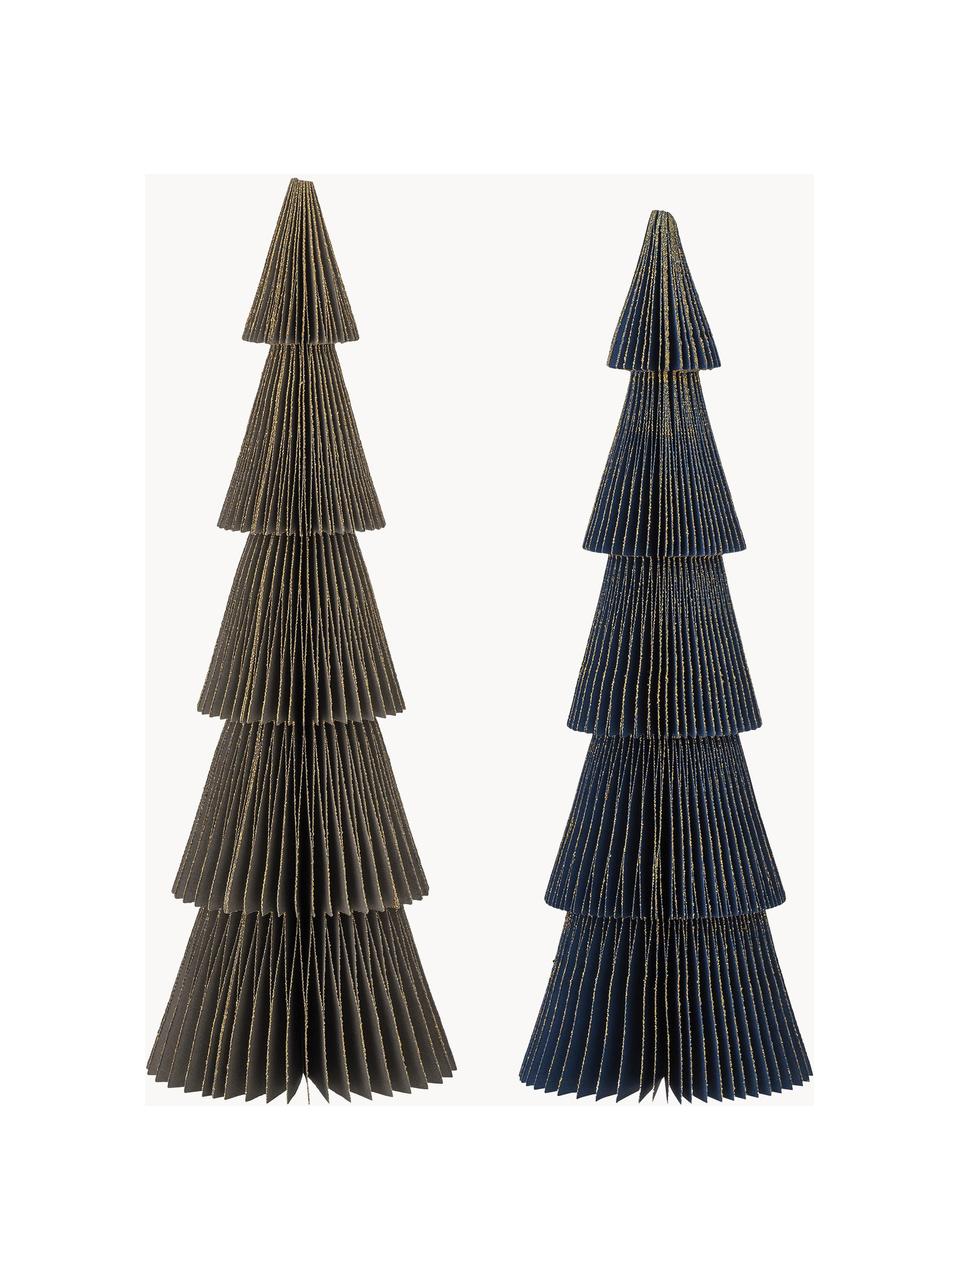 Decoratieve boompjes Milan, 2 stuks, Papier, Donkergroen, donkerblauw, Ø 10 x H 30 cm